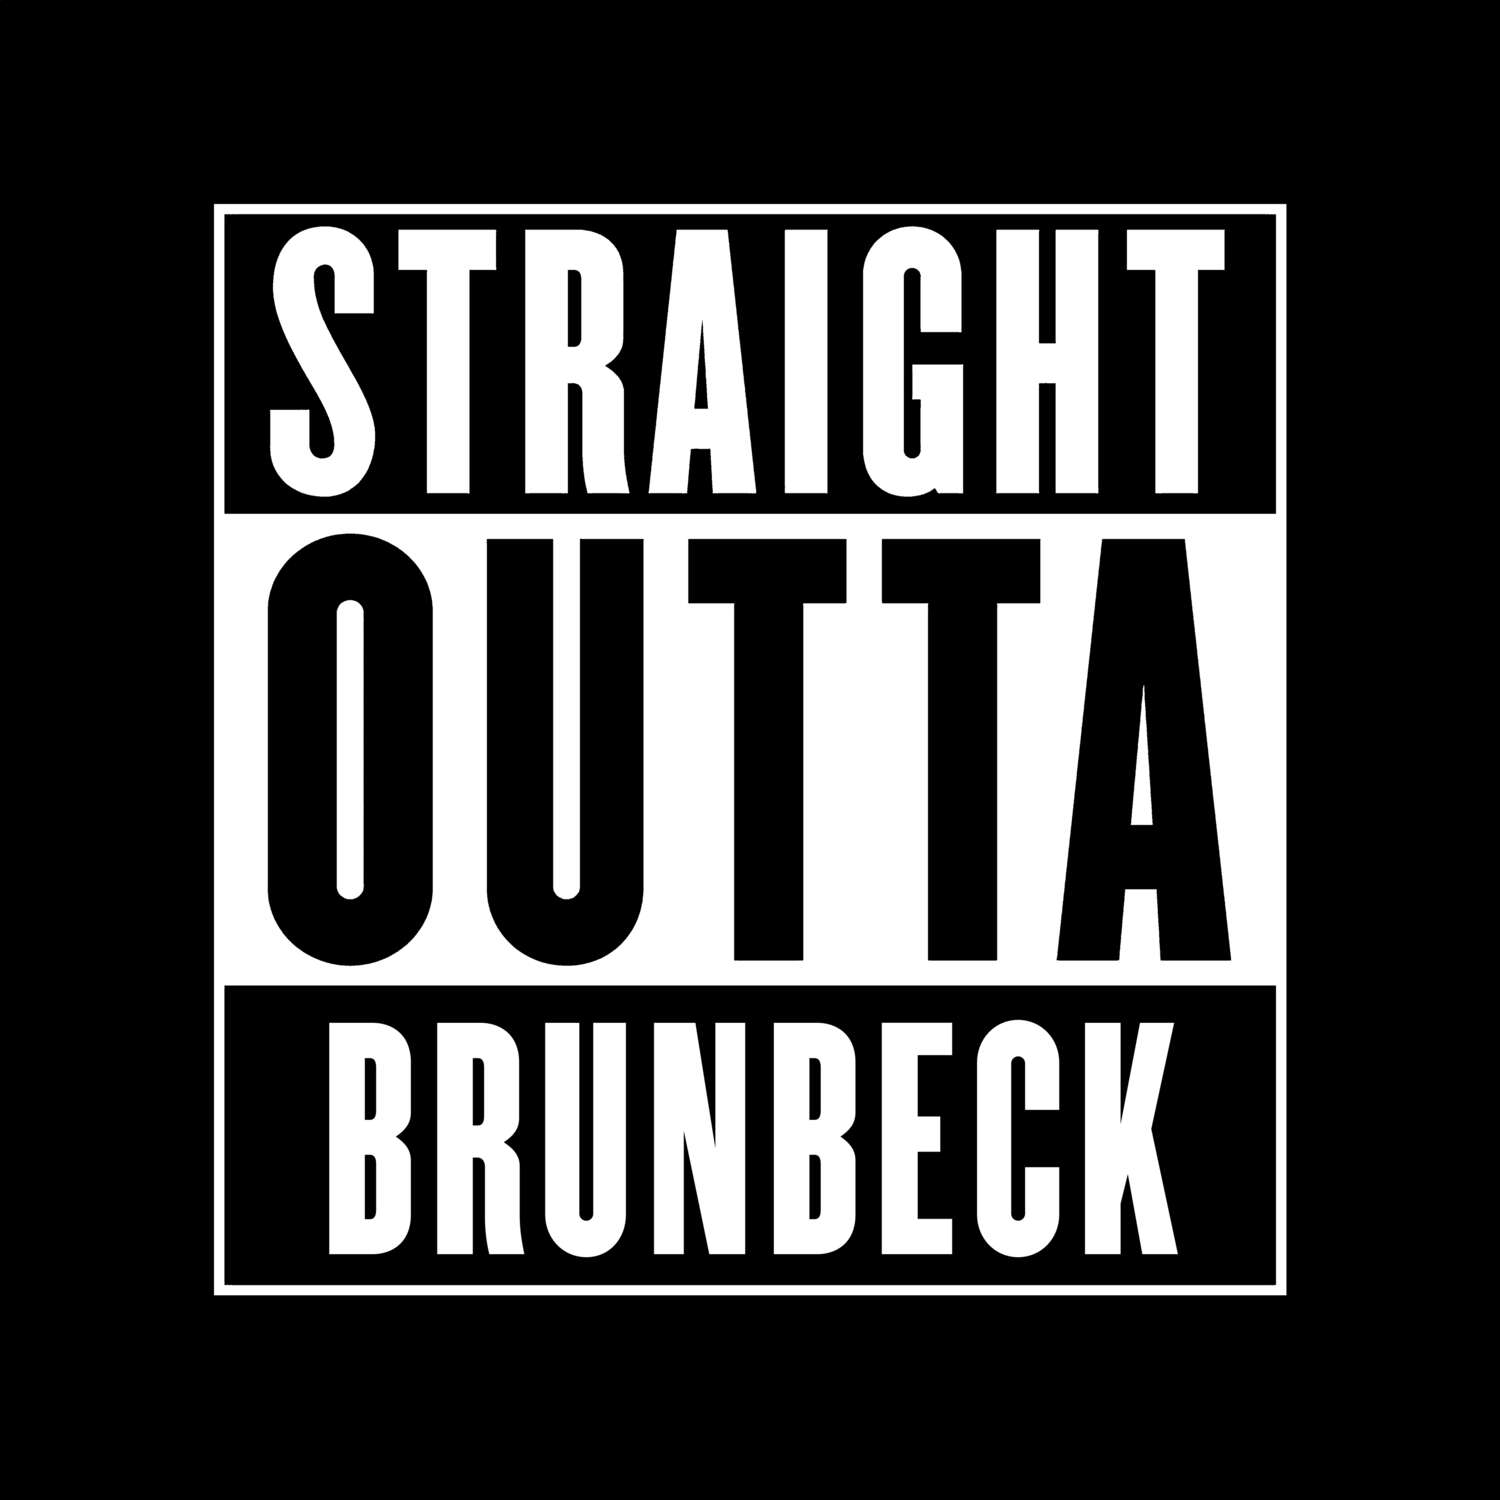 Brunbeck T-Shirt »Straight Outta«